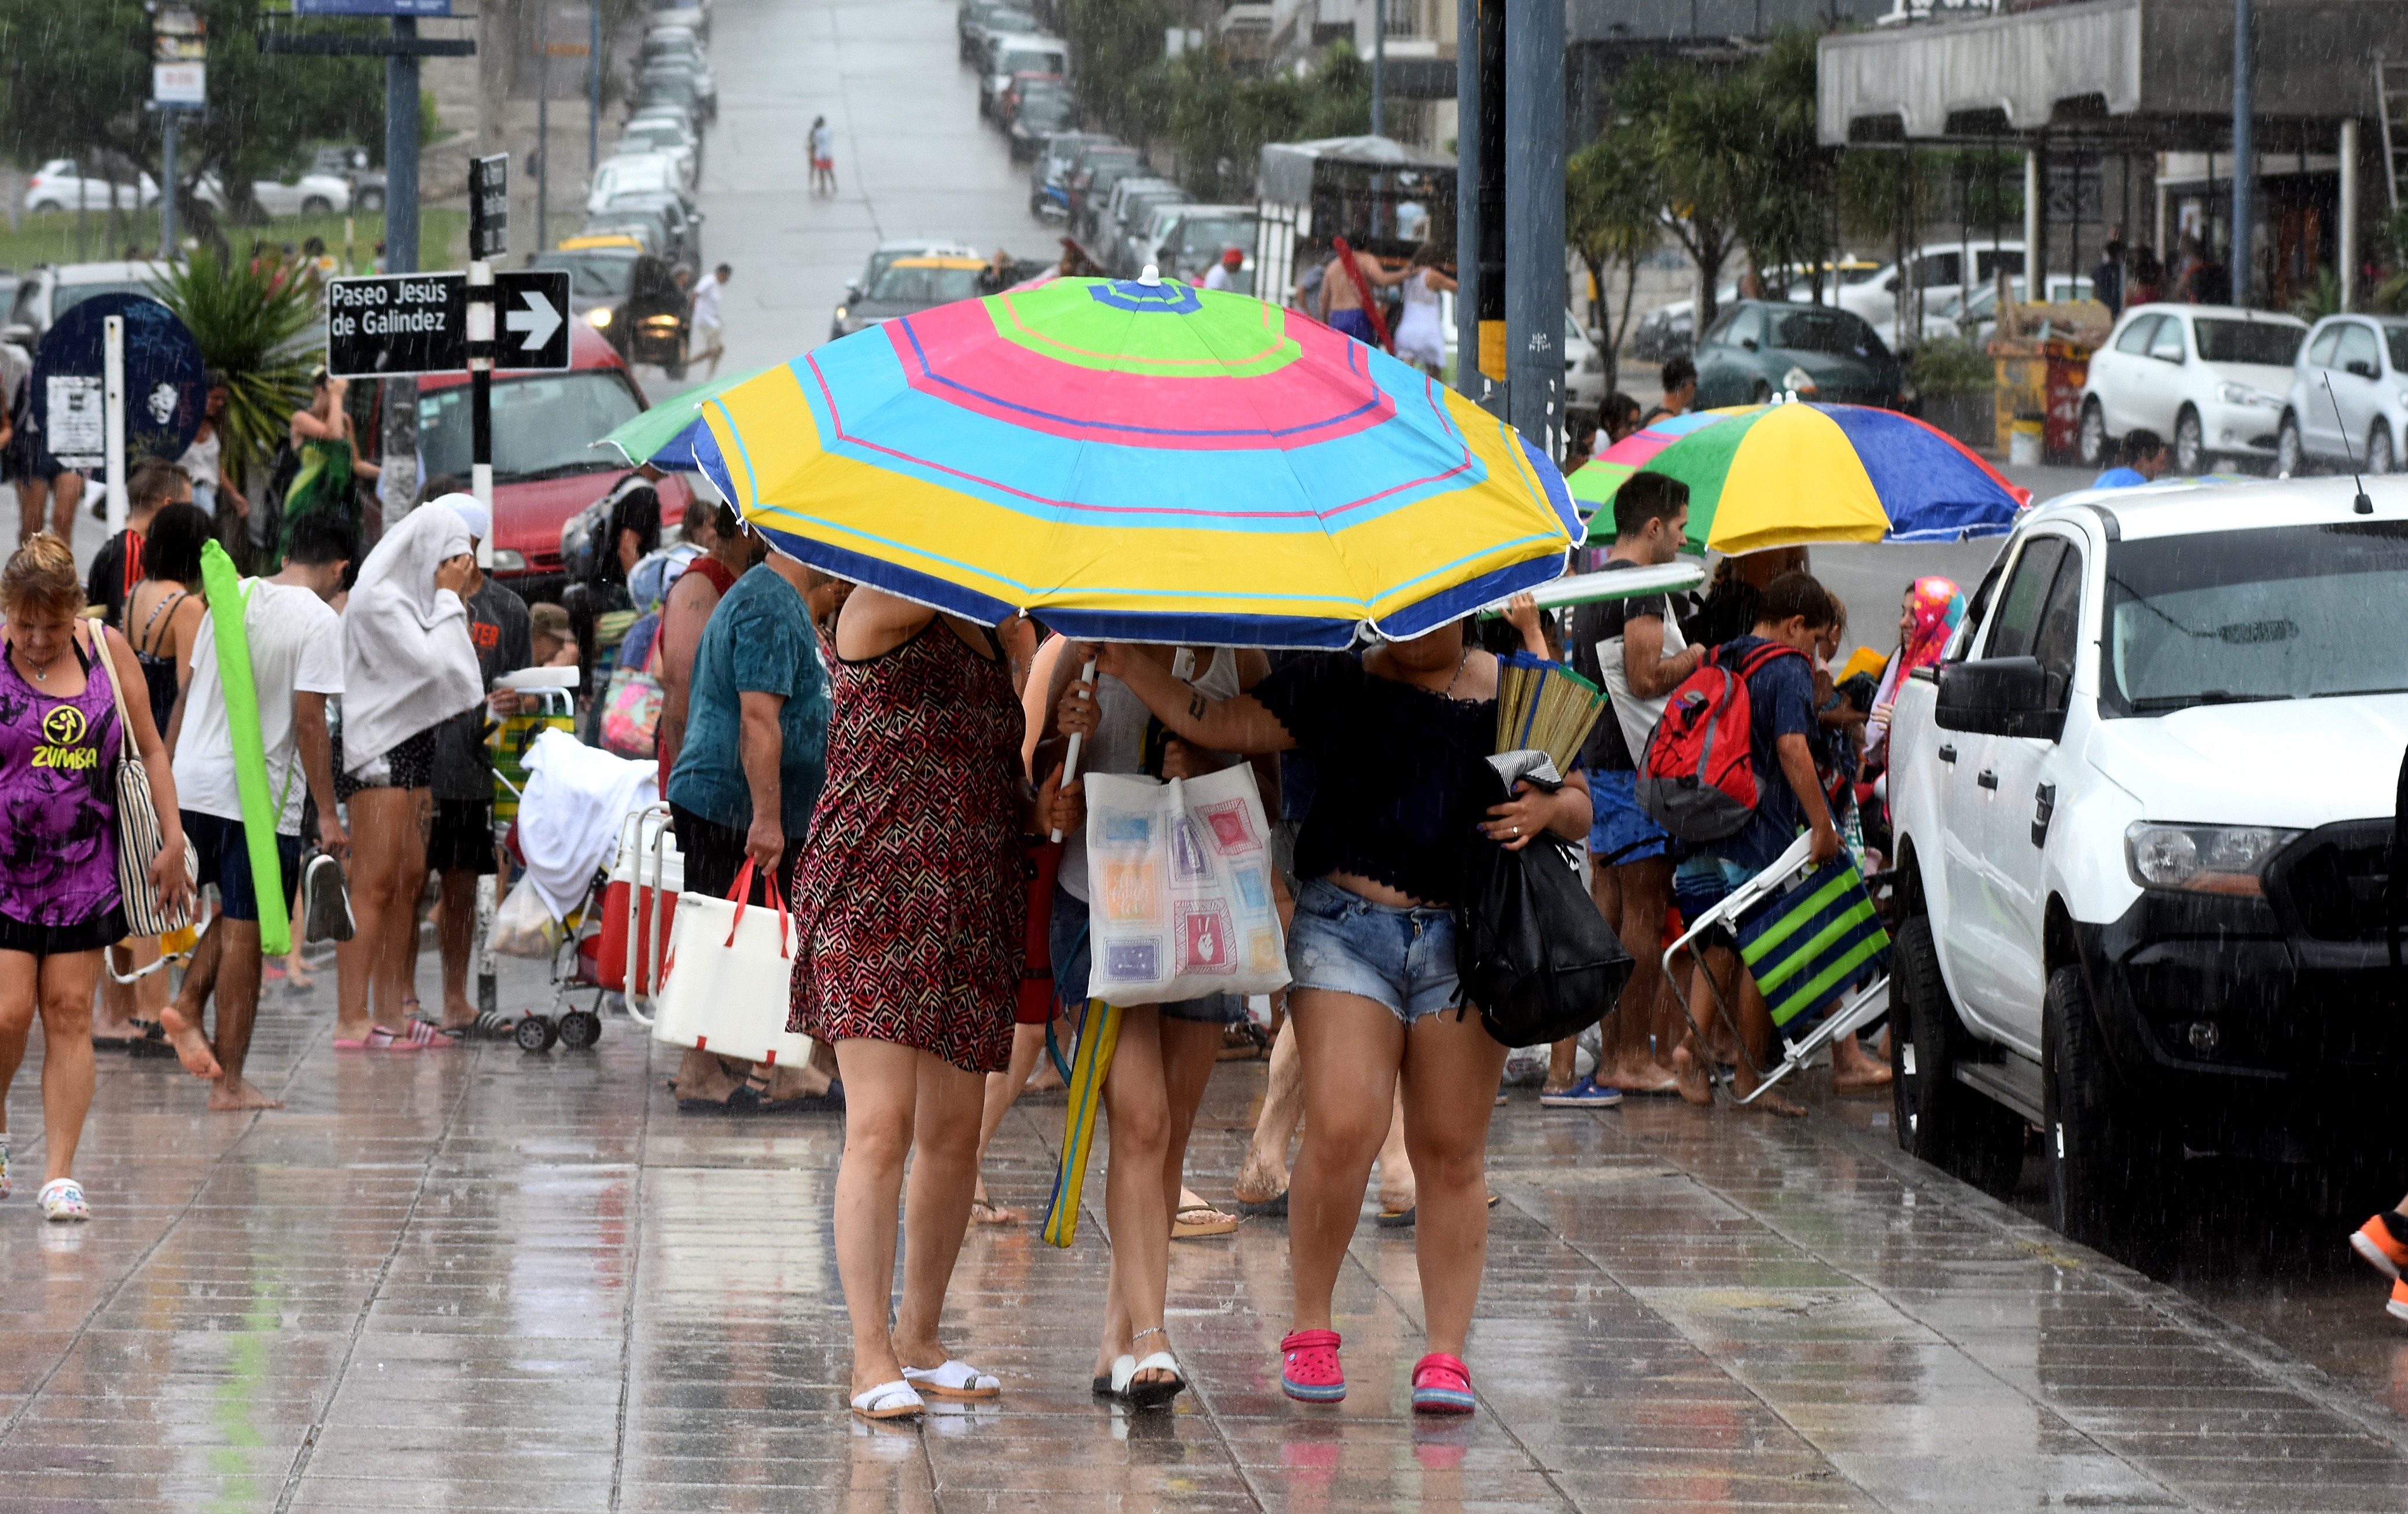 Por efecto de la lluvia, a la salida de la playa muchos debieron reconvertir la sombrilla en paraguas.